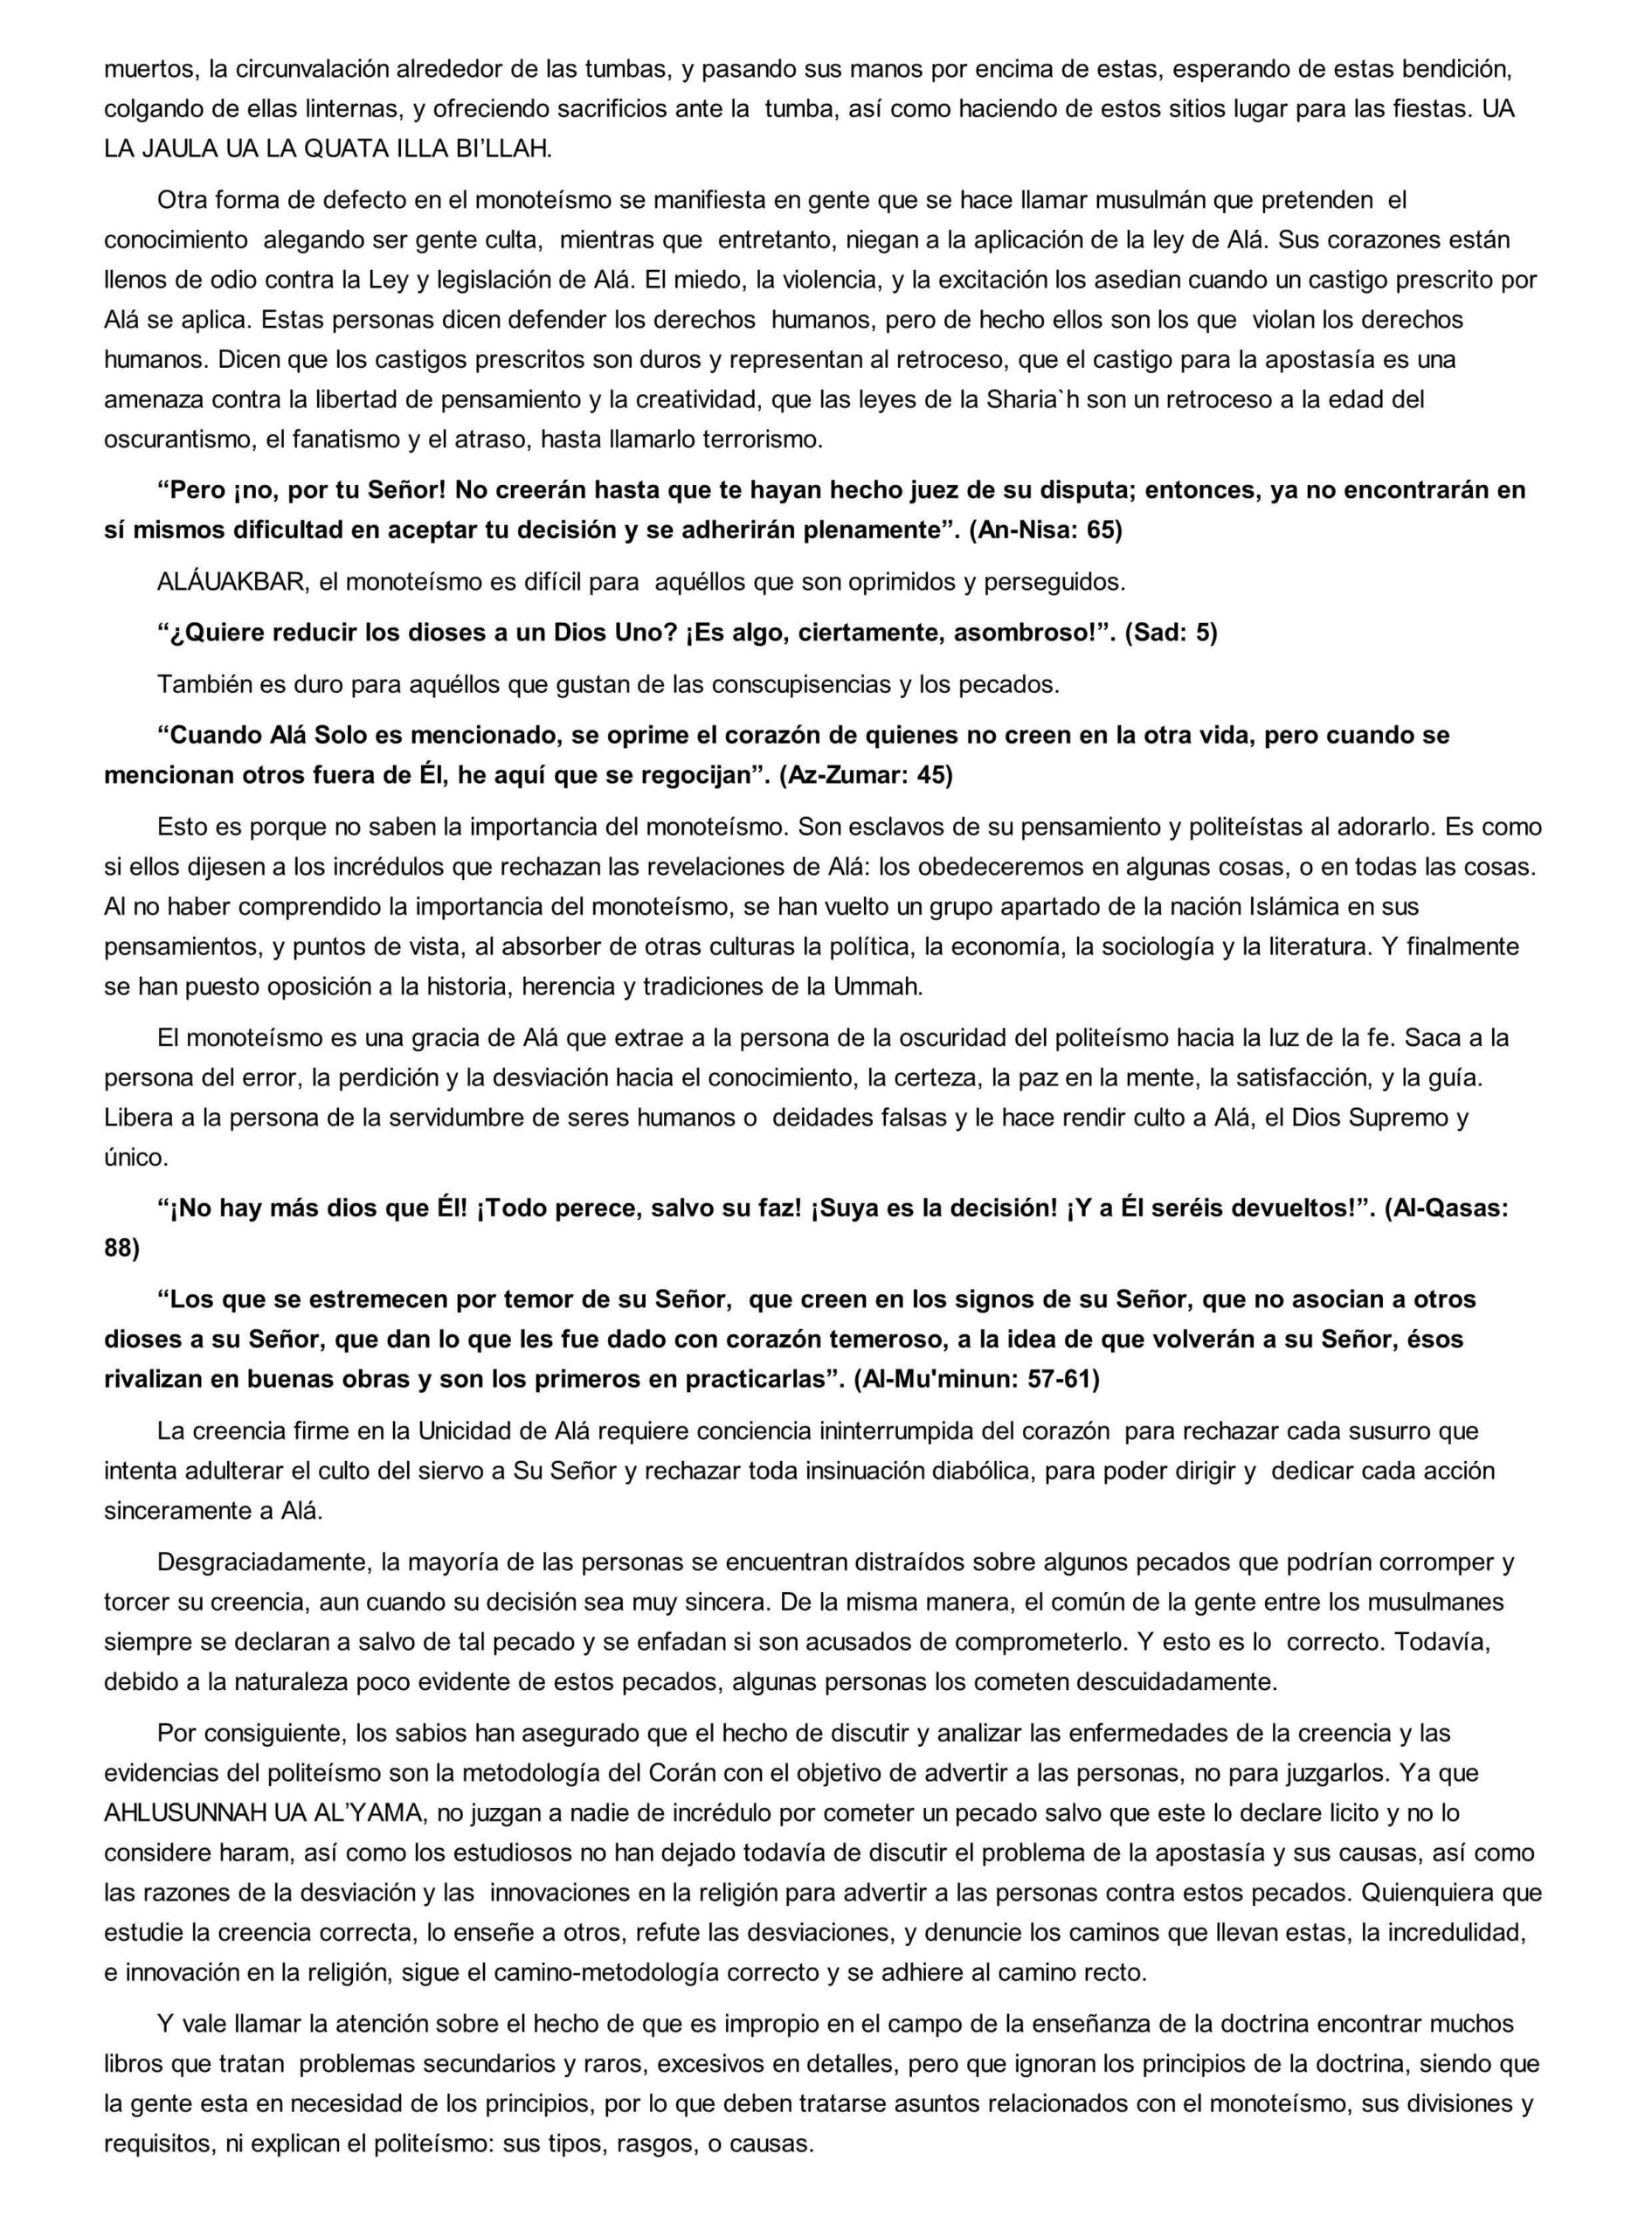 إسباني - التوحيد أولاً - El Tawhid Primero.pdf, 6-Sayfa 